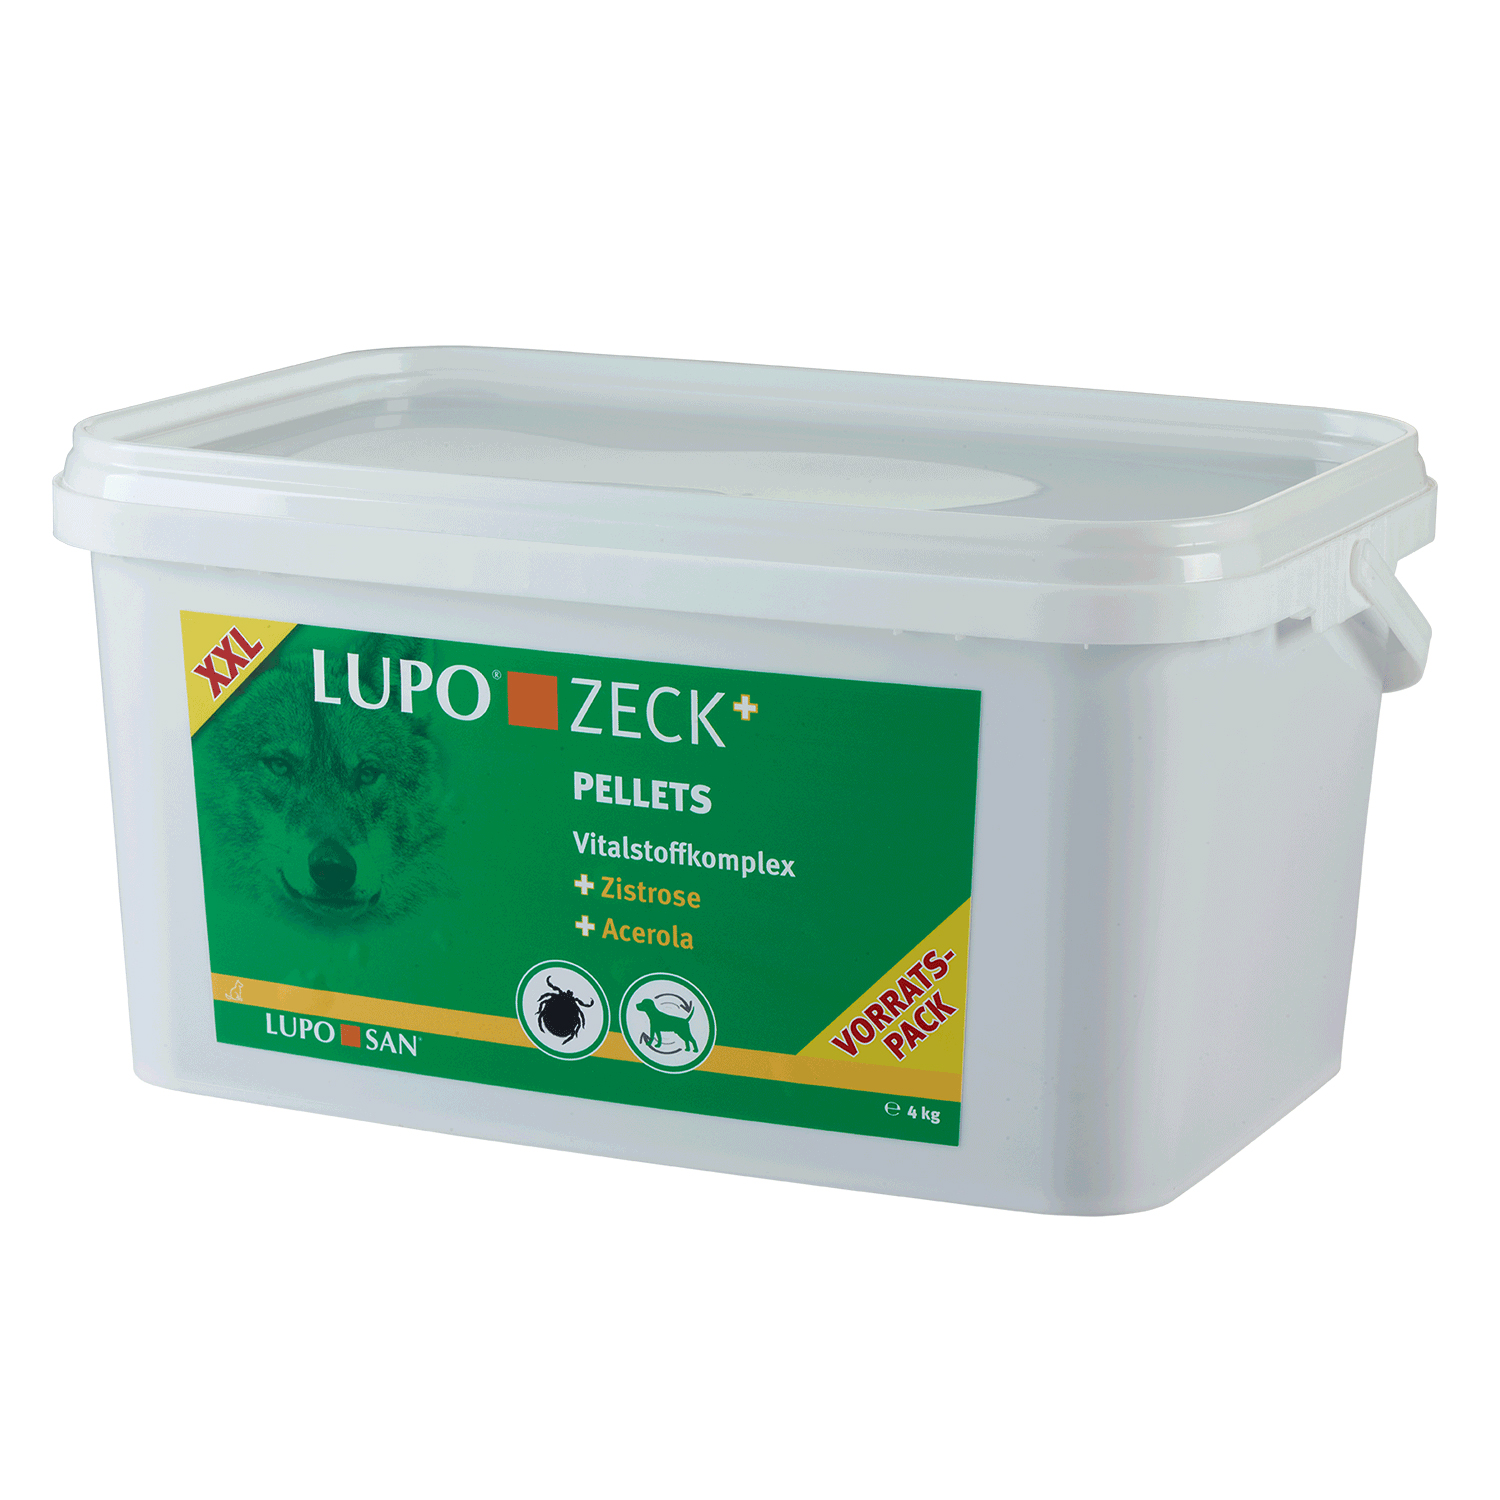 LUPO ZECK+ 4000 g